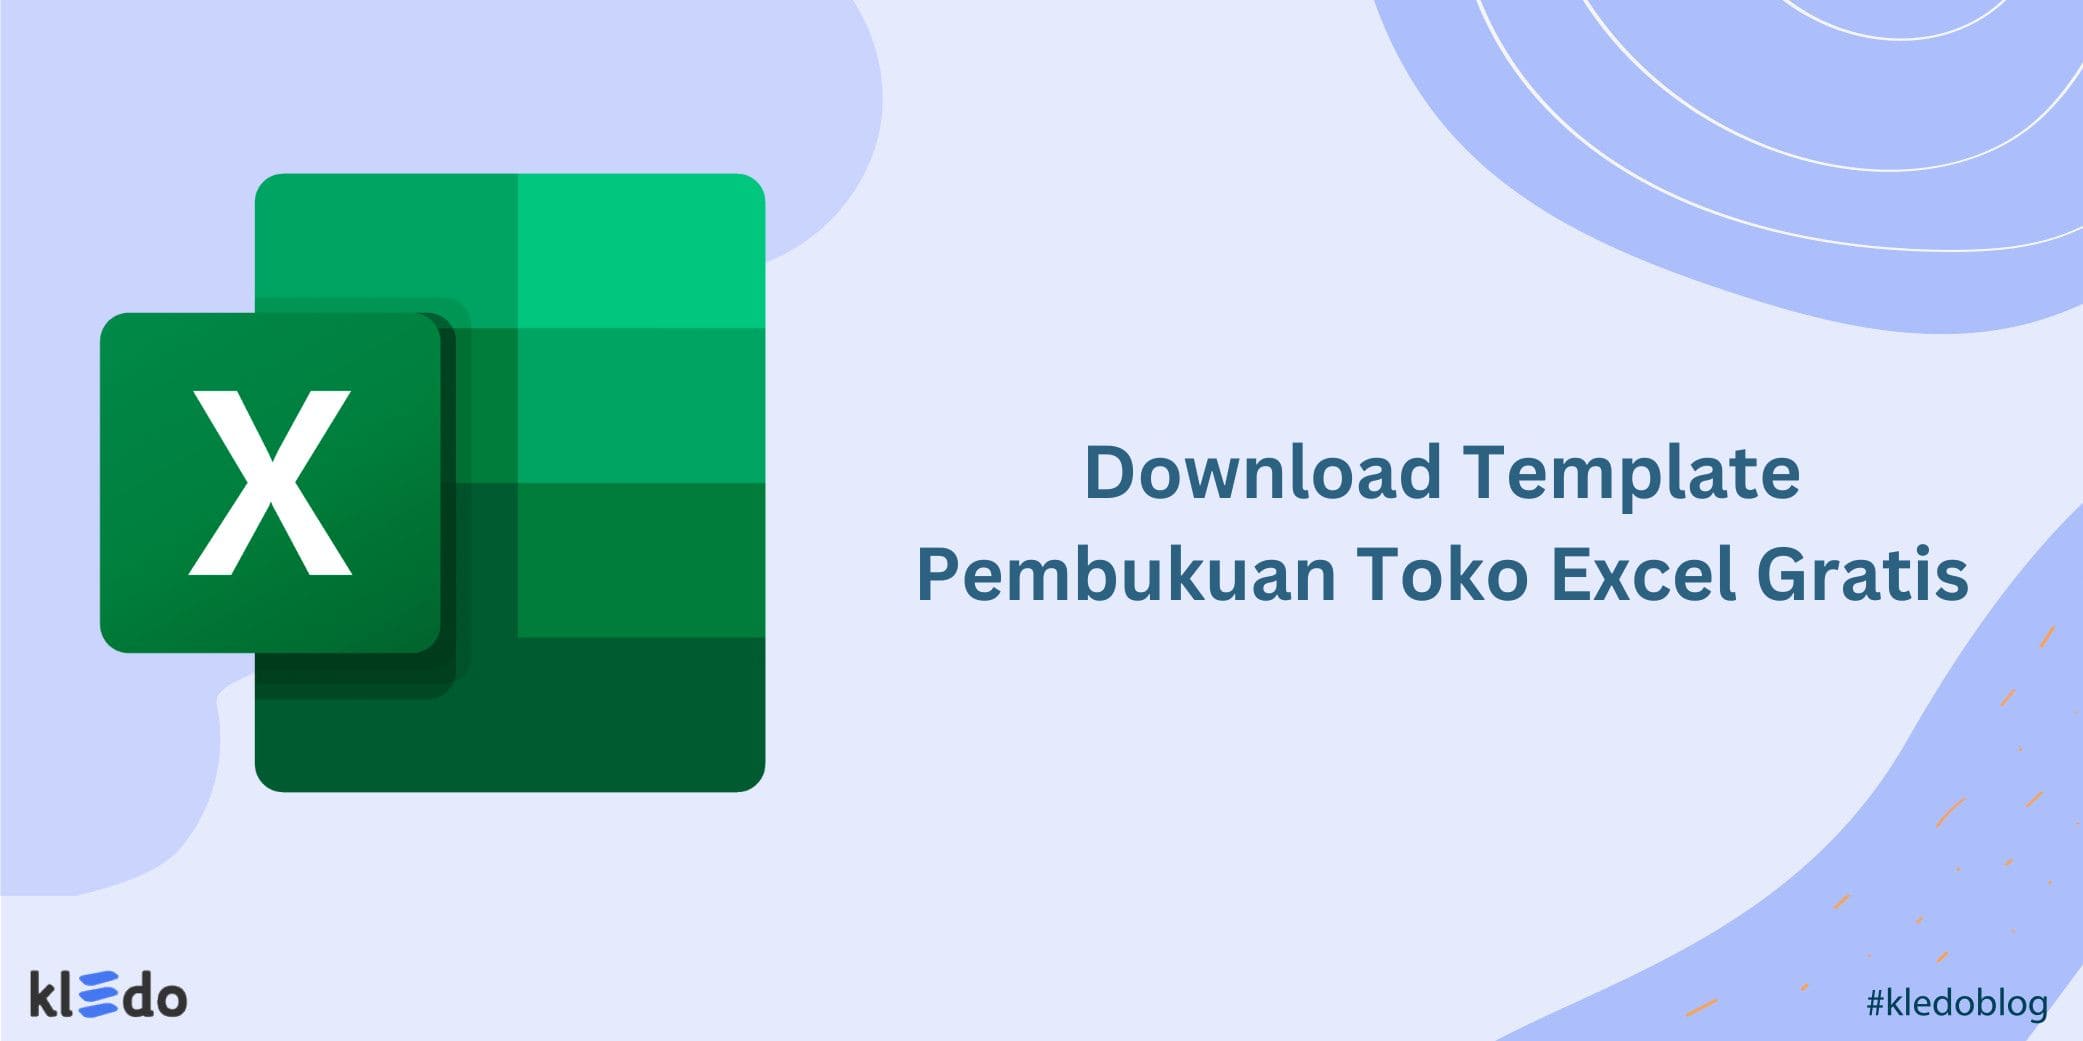 Download Template Pembukuan Toko Excel Gratis (1)